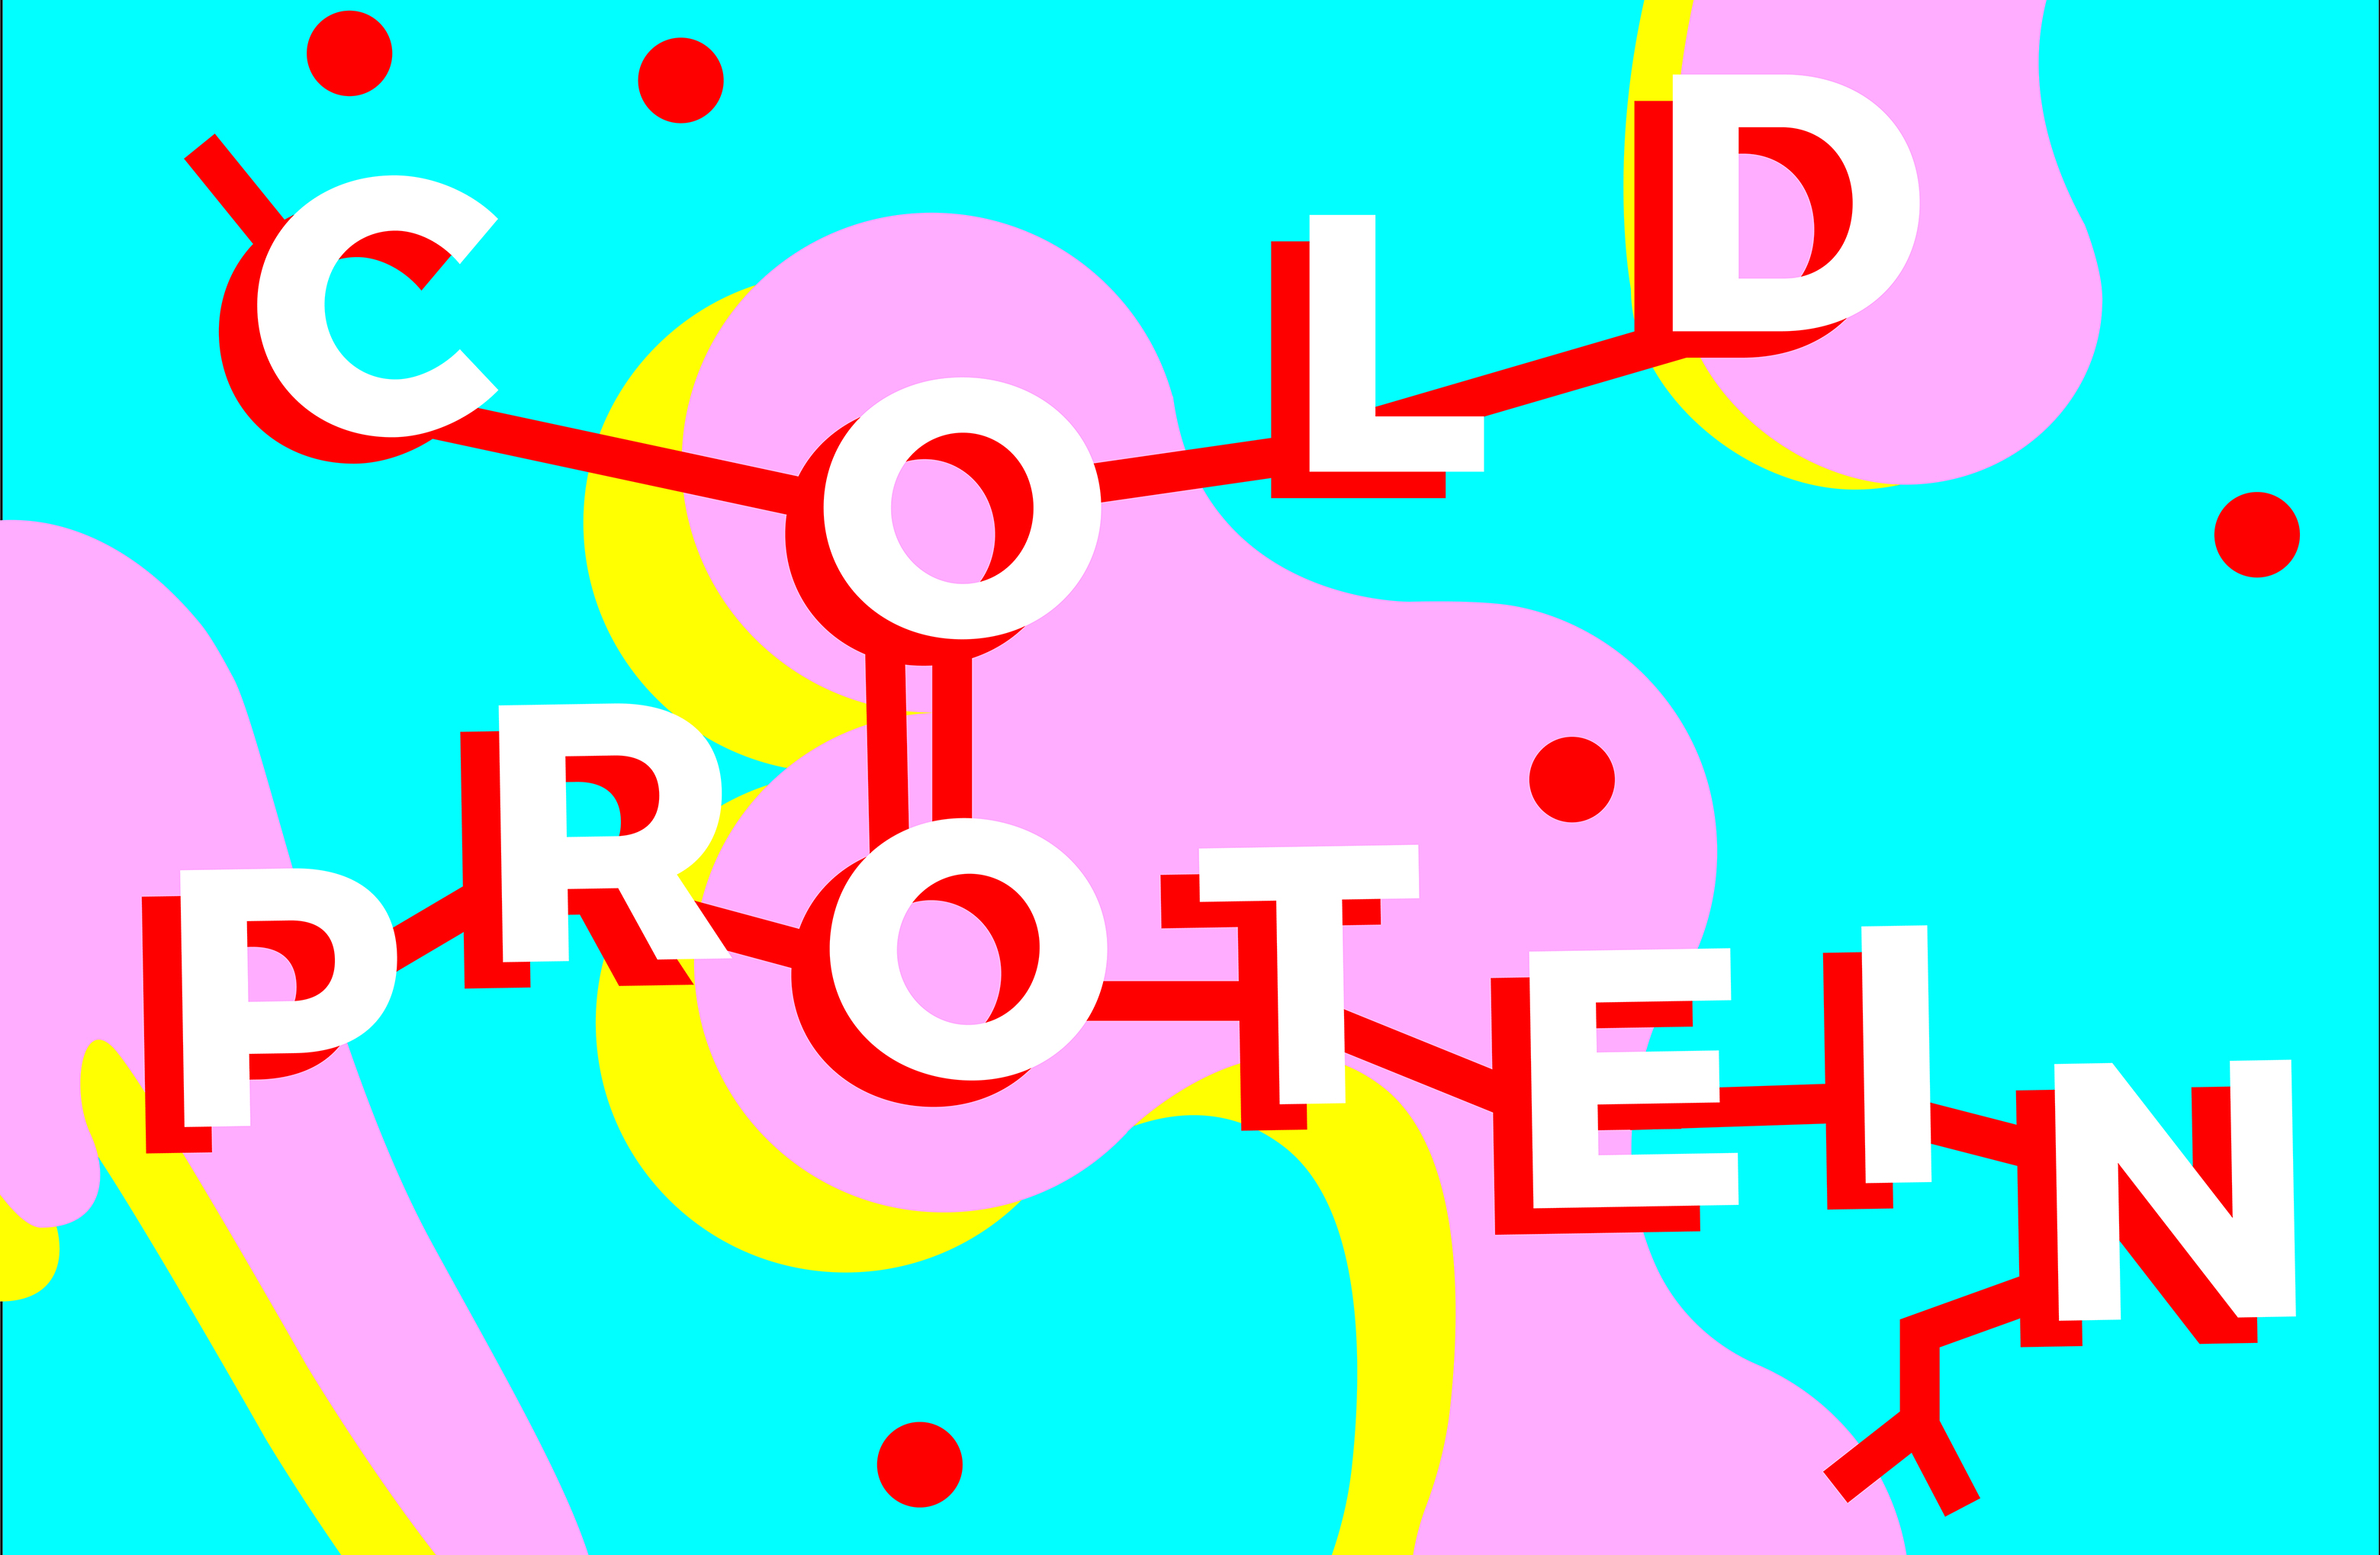 https://www.stanleypickergallery.org/wp-content/uploads/sites/8/2018/09/Cold-Protein-Logo-crop-1-1.jpg